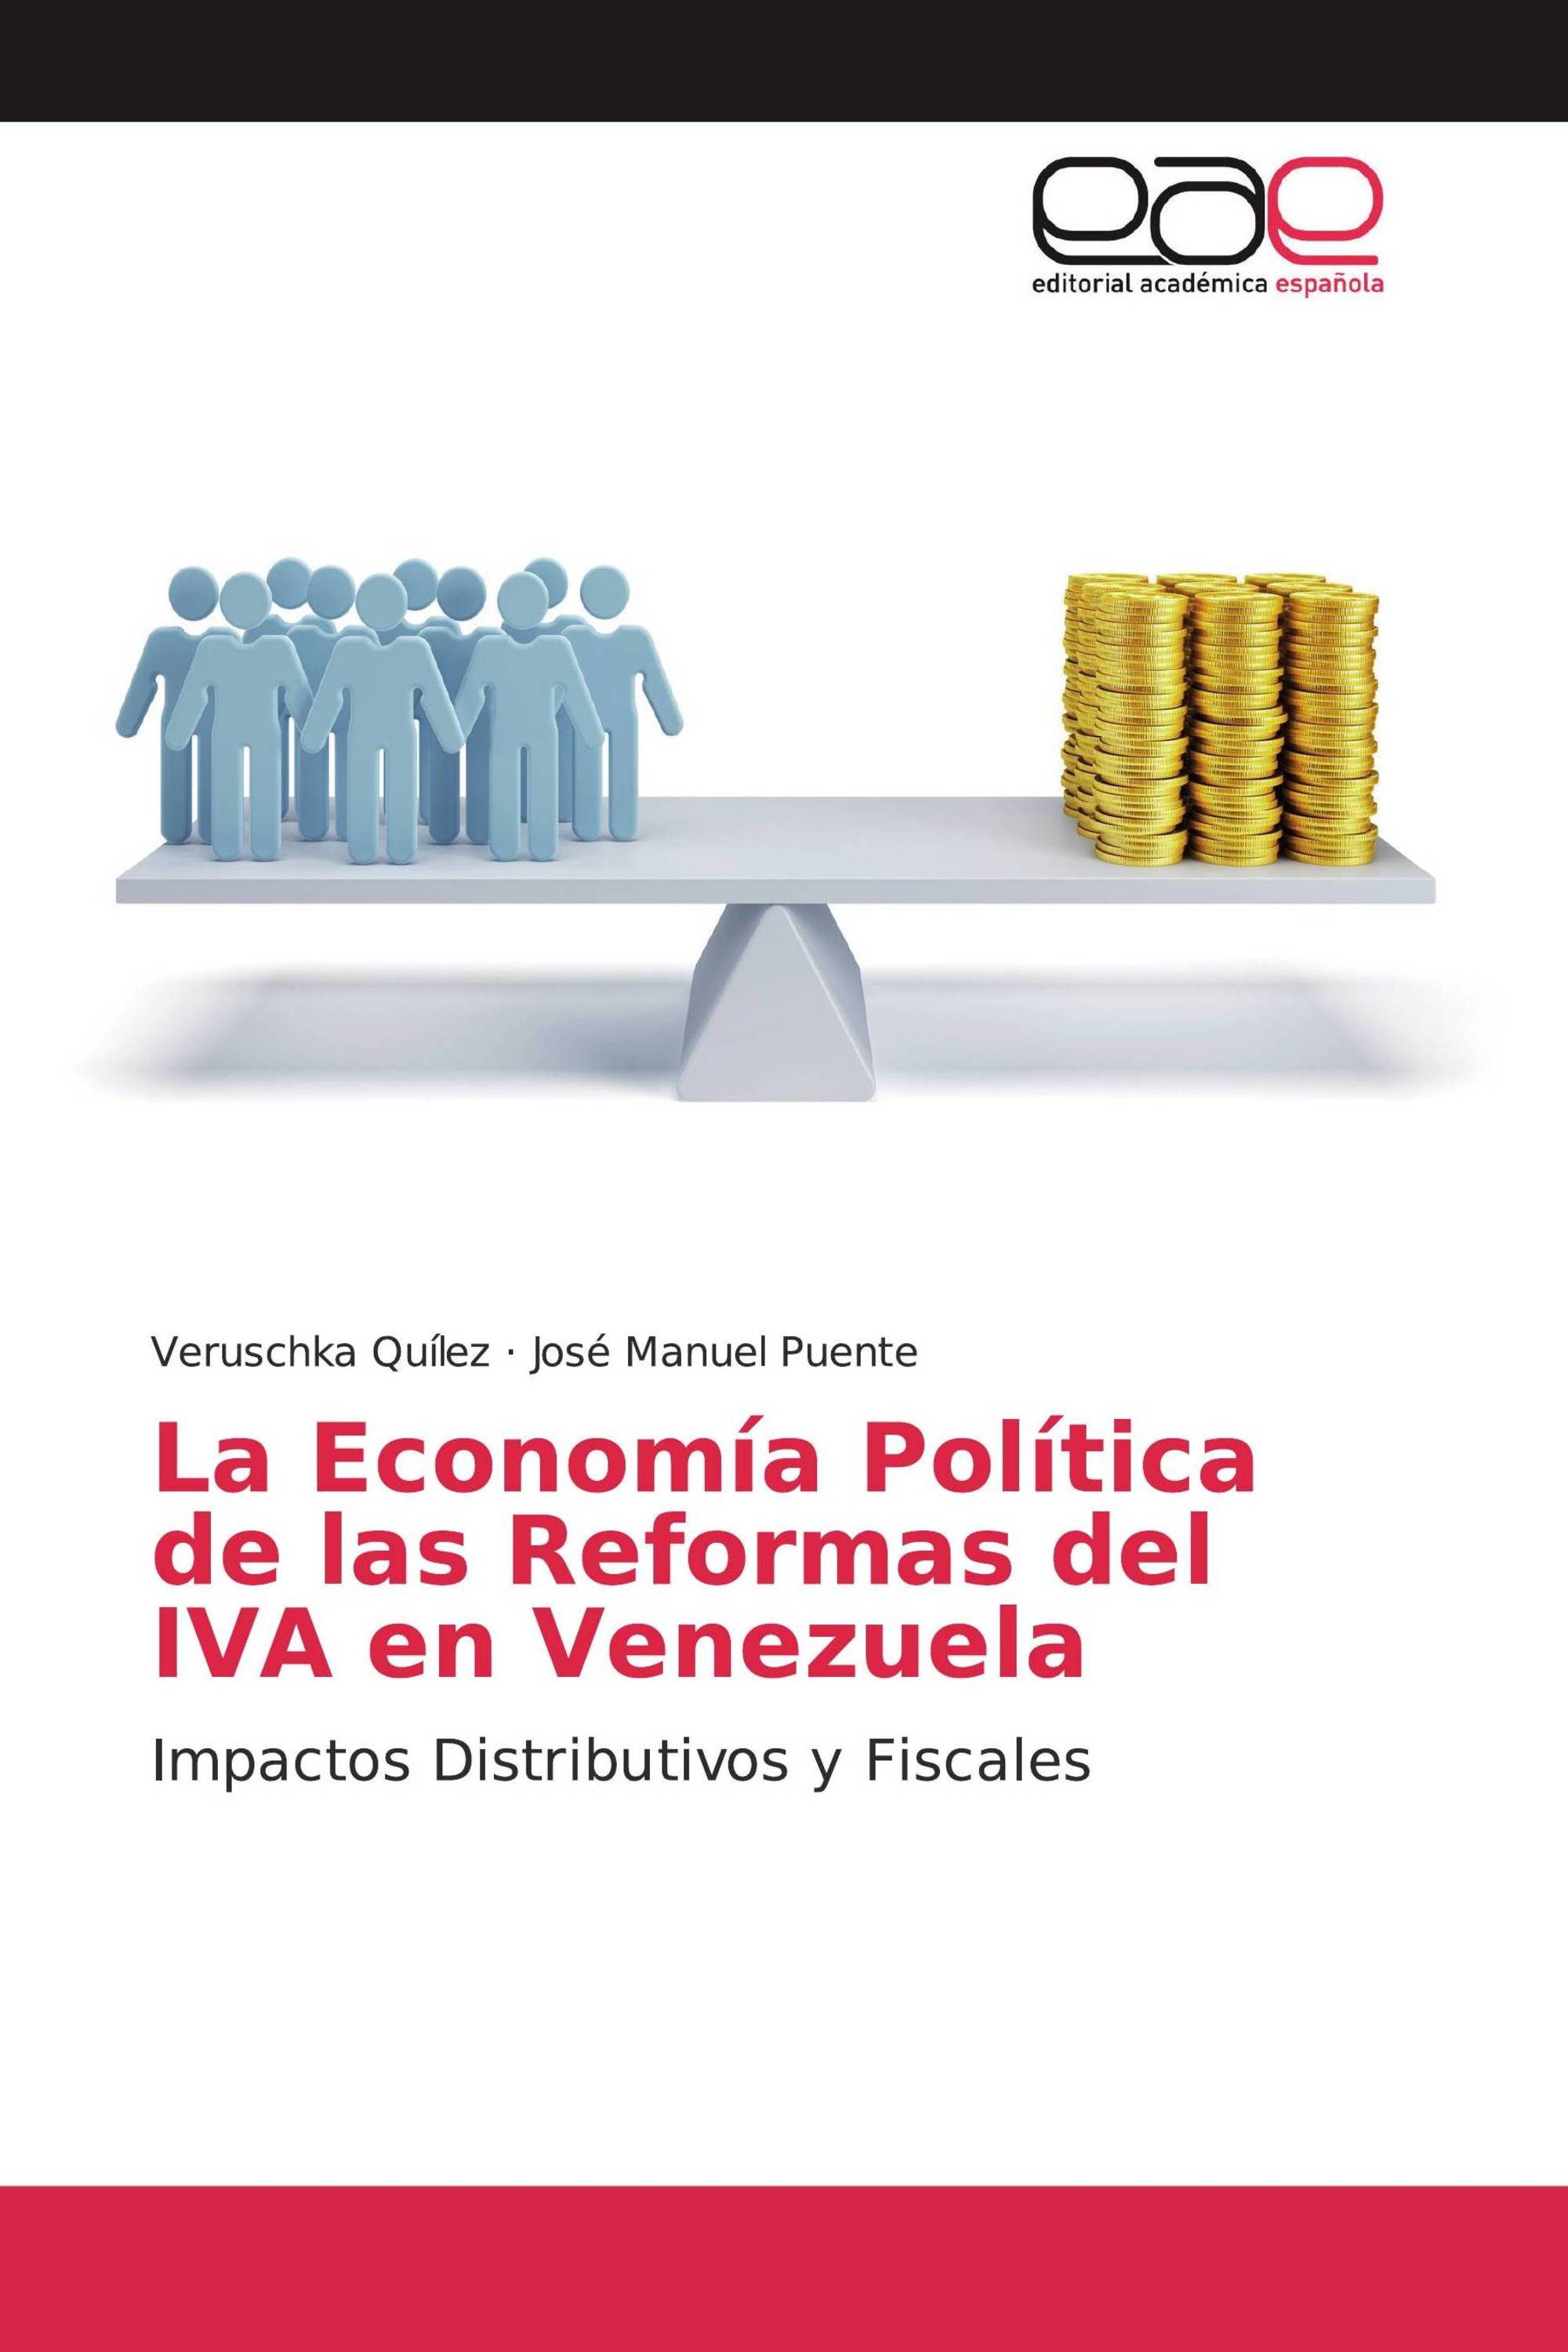 La Economía Política de las Reformas del IVA en Venezuela